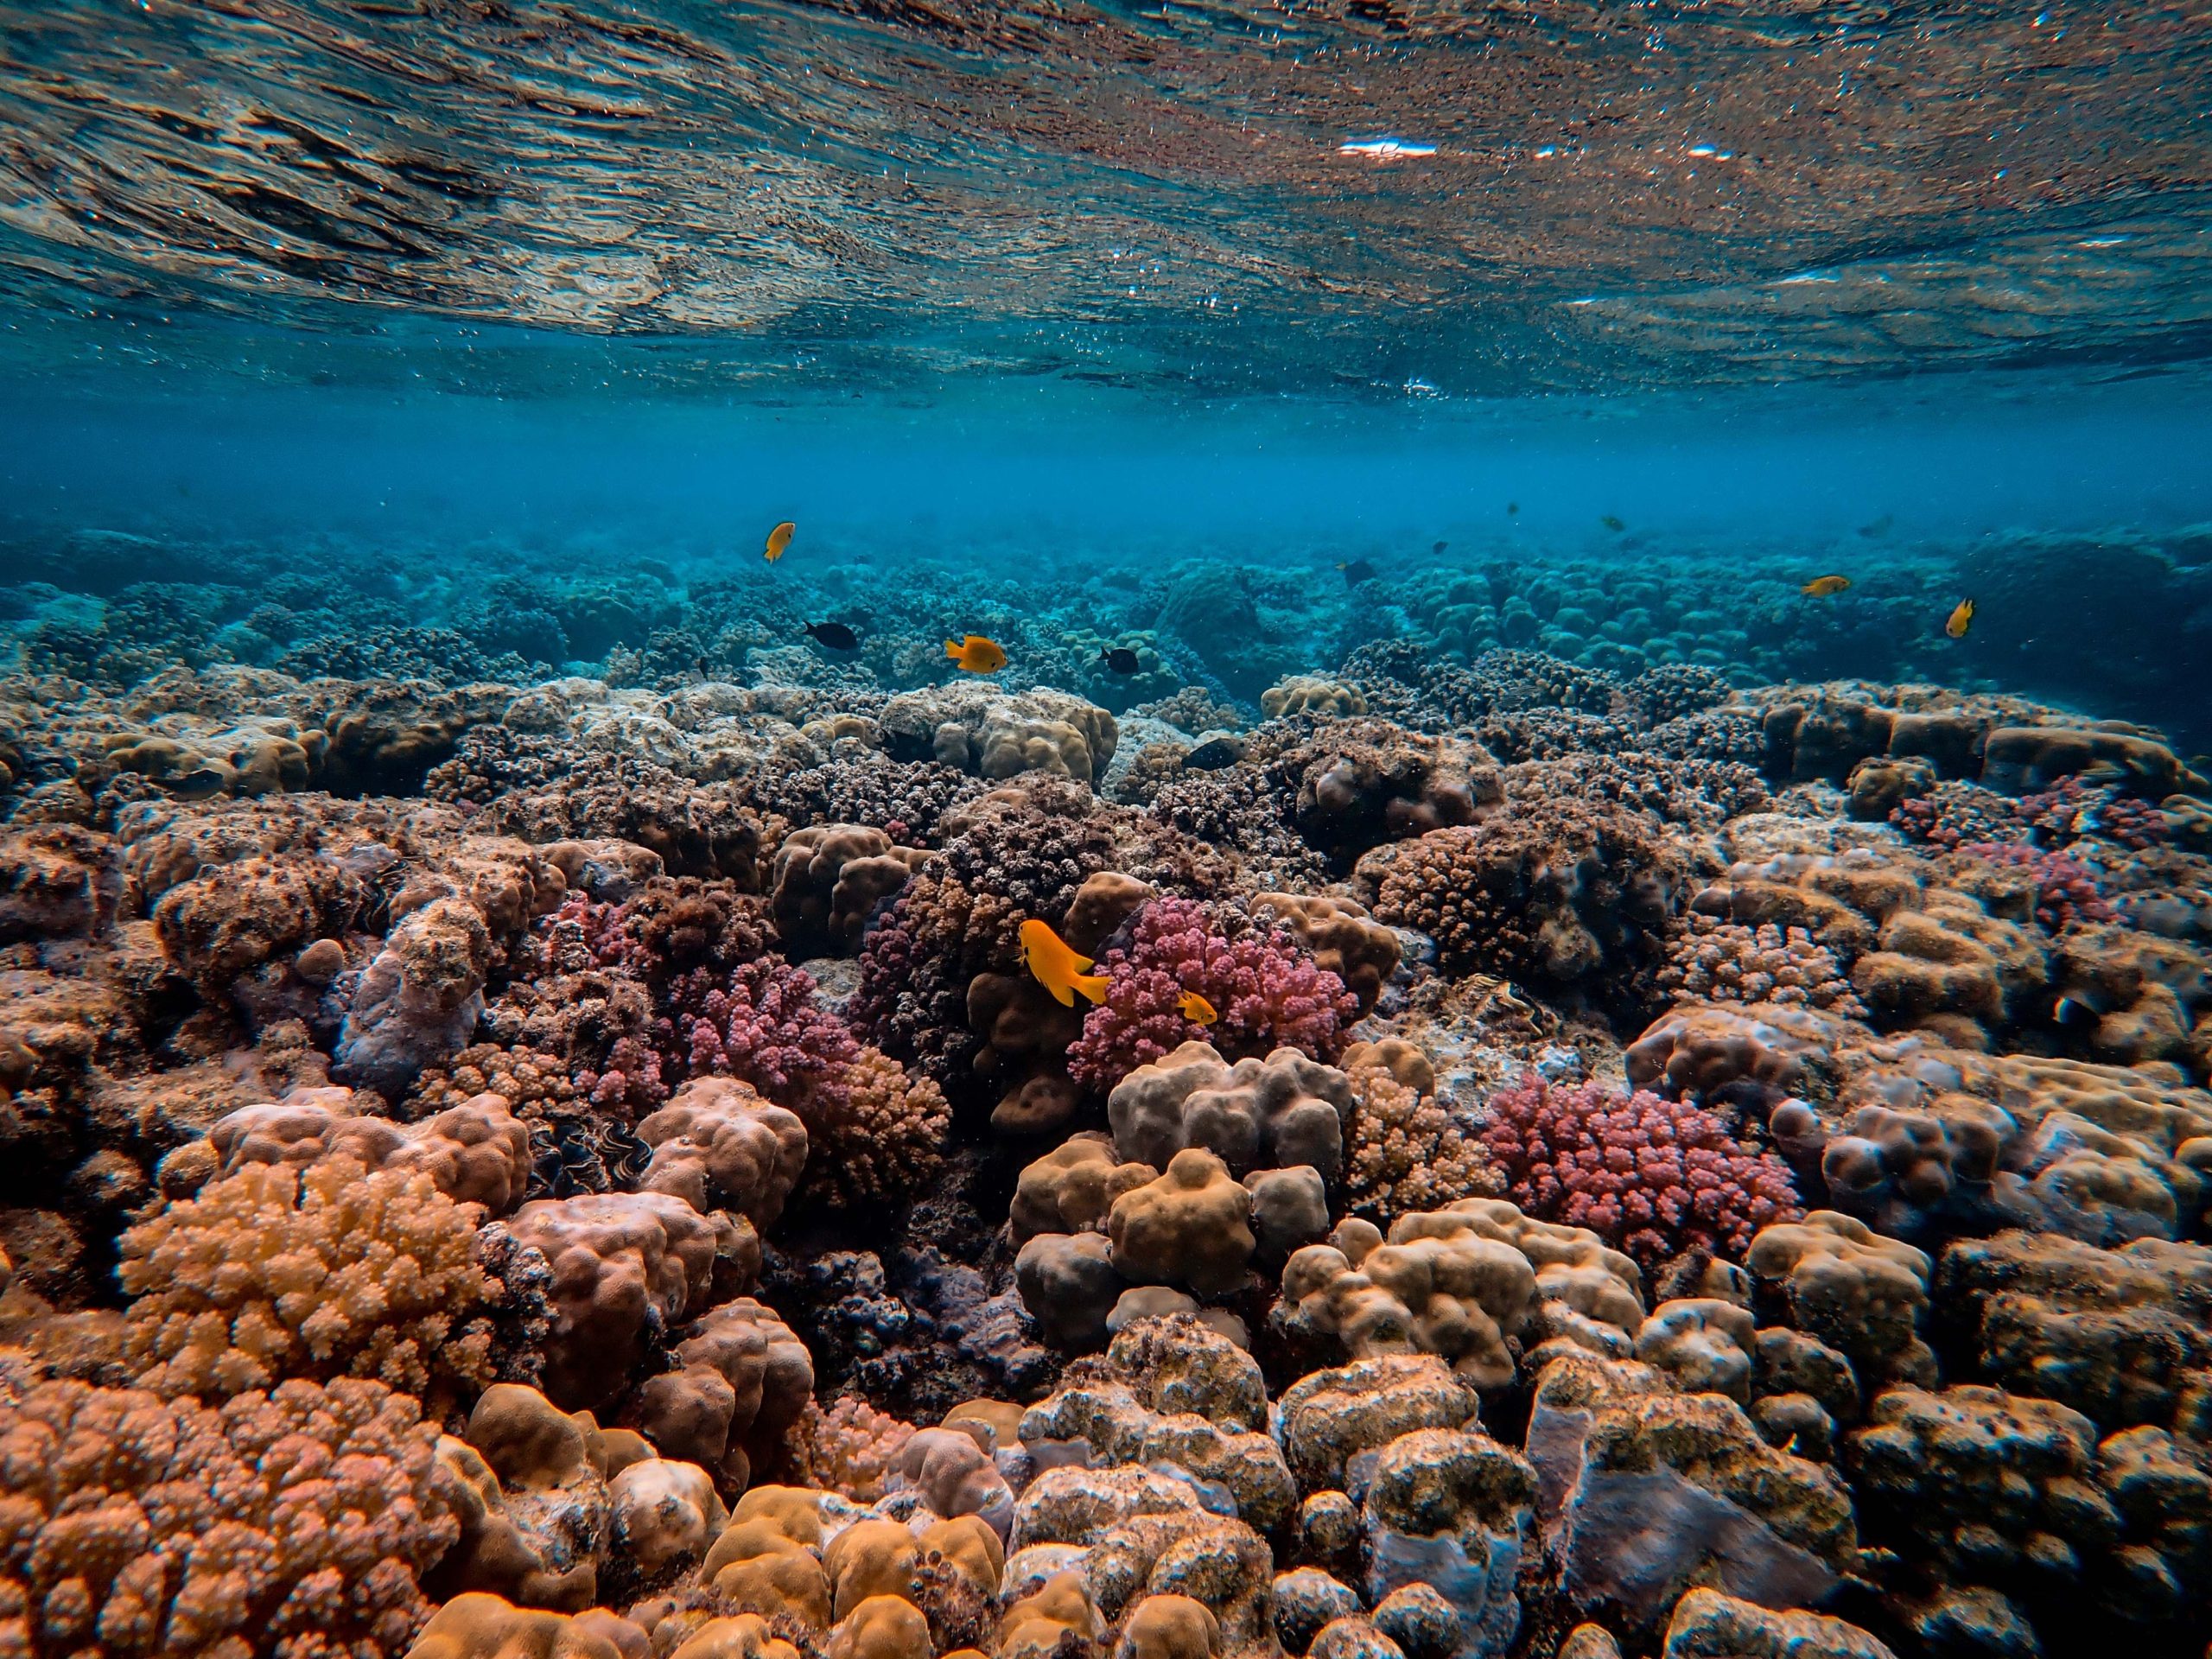 Fotografia do fundo do mar, com recifes de corais em diversos tons de rosa, laranja e amarelo.